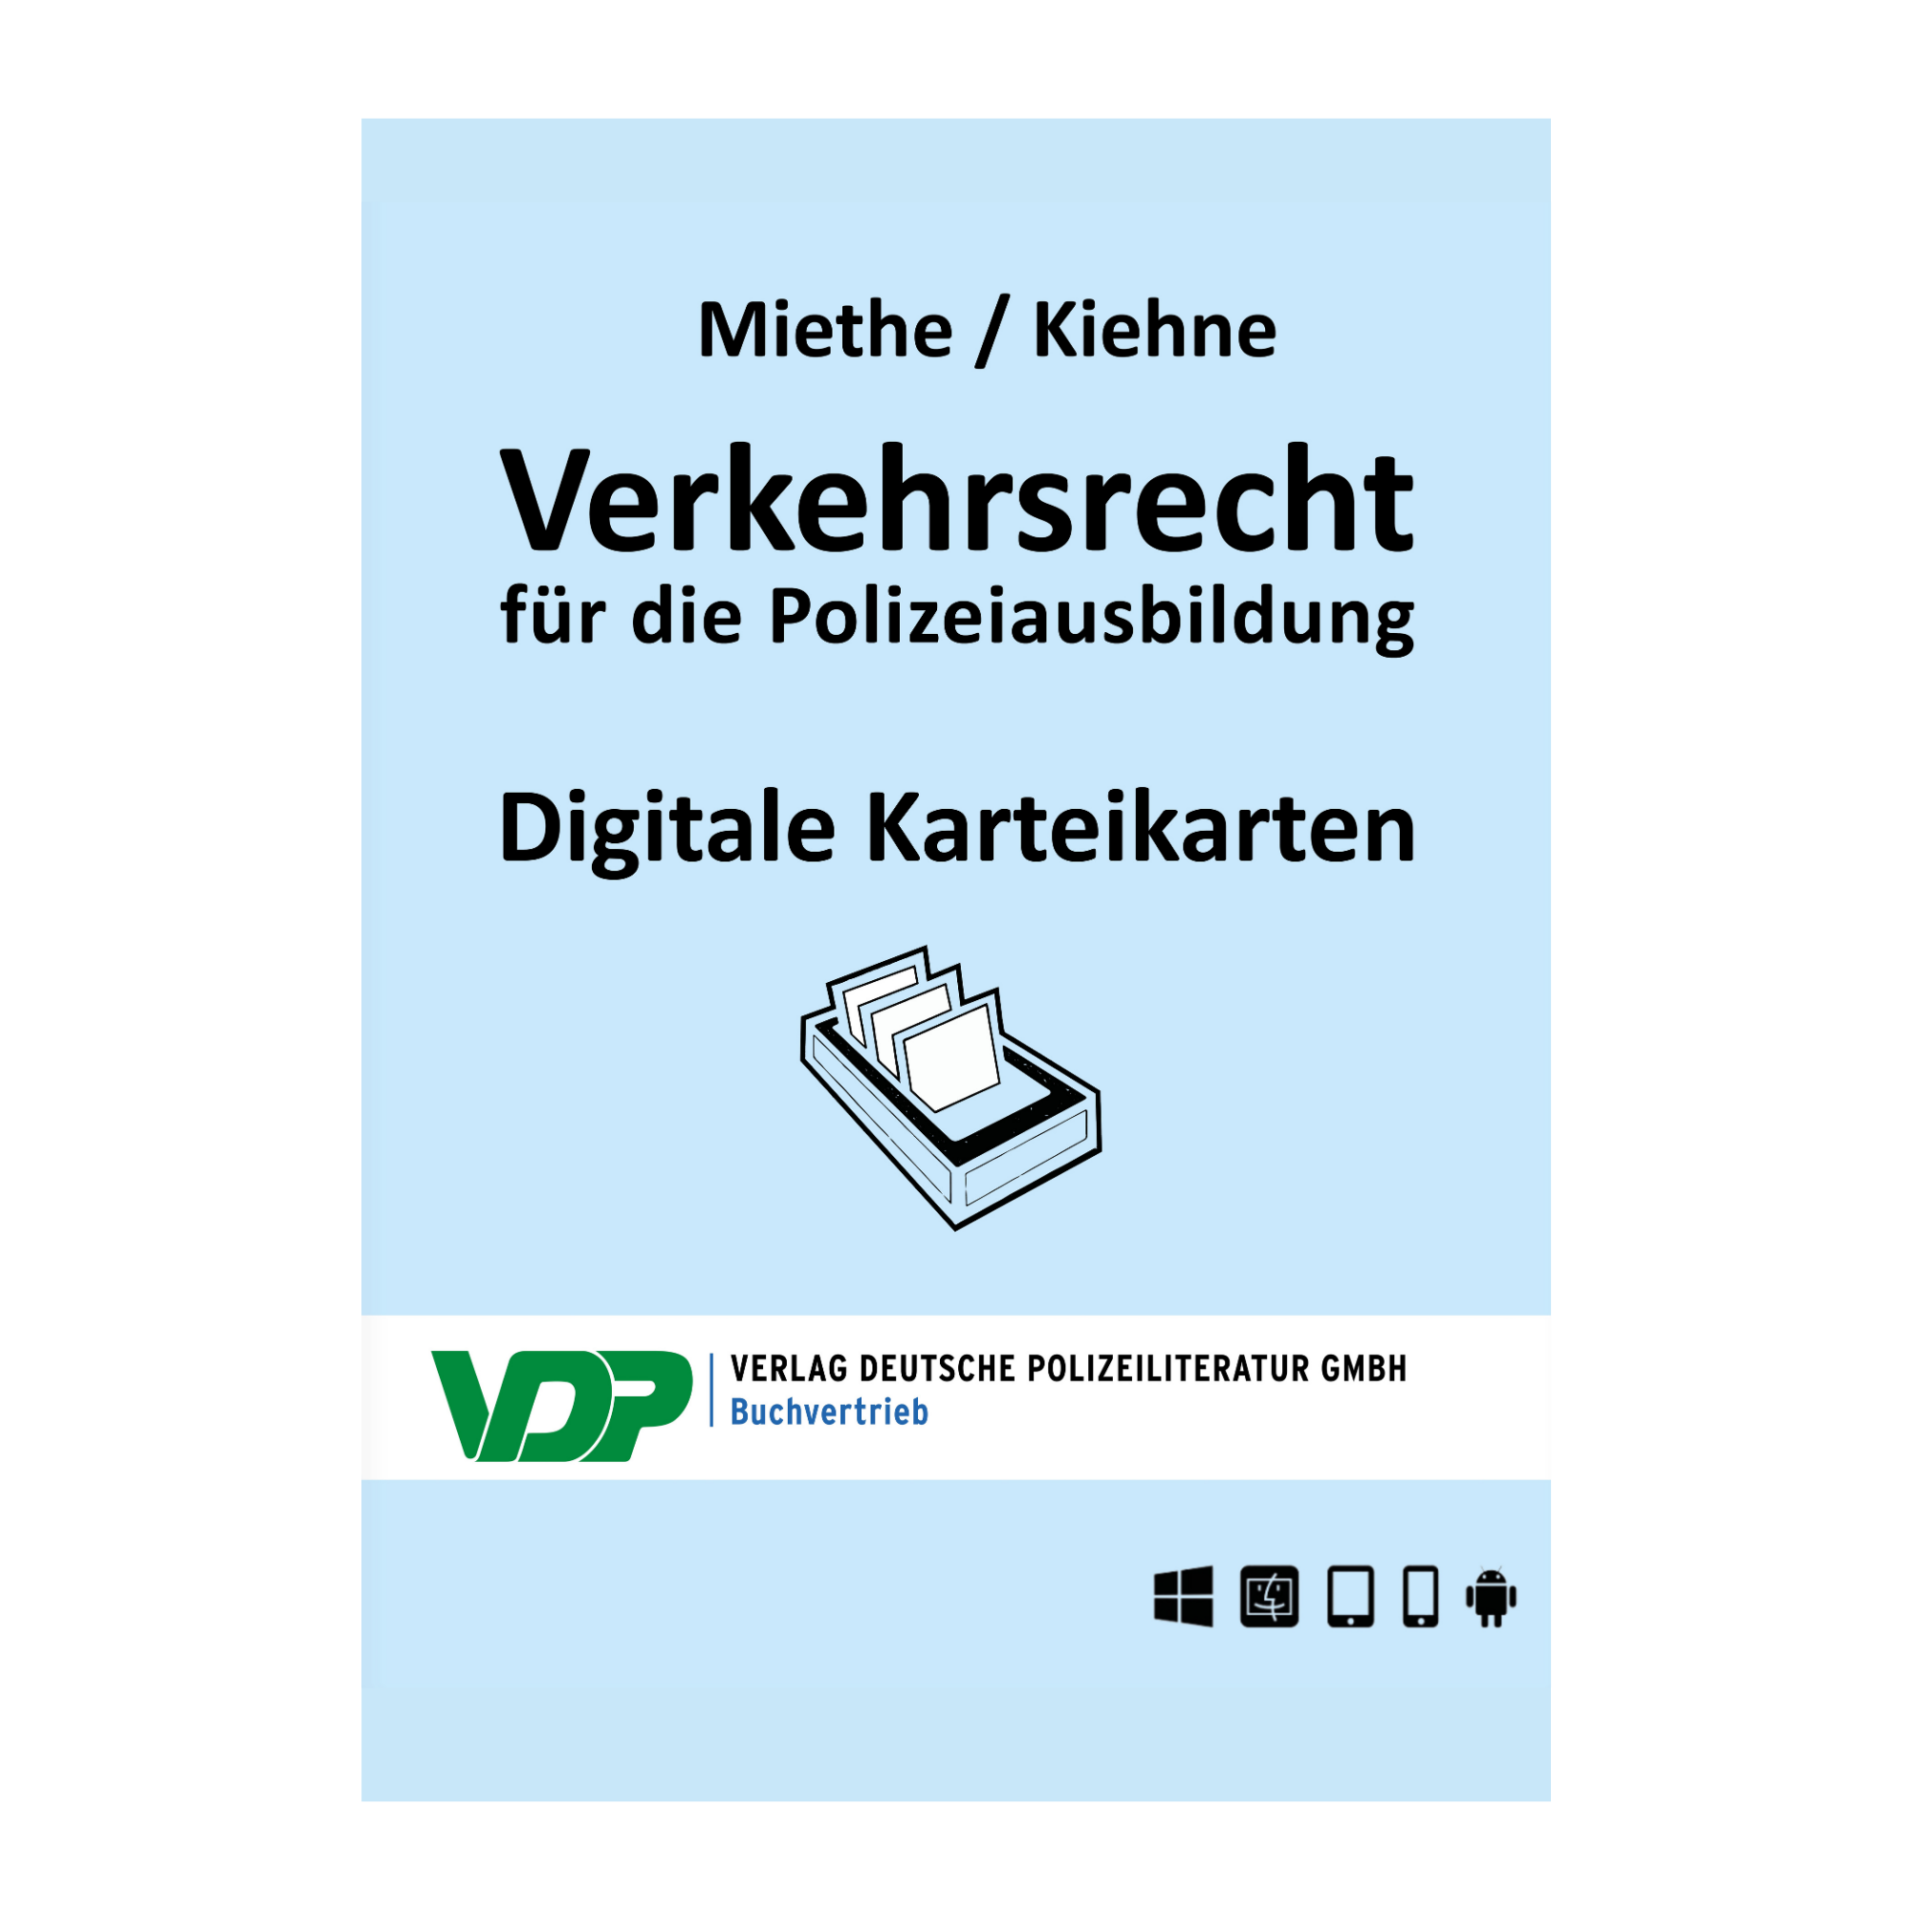 Digitale_Lernkartei_Bild_Verkehrsrecht_final